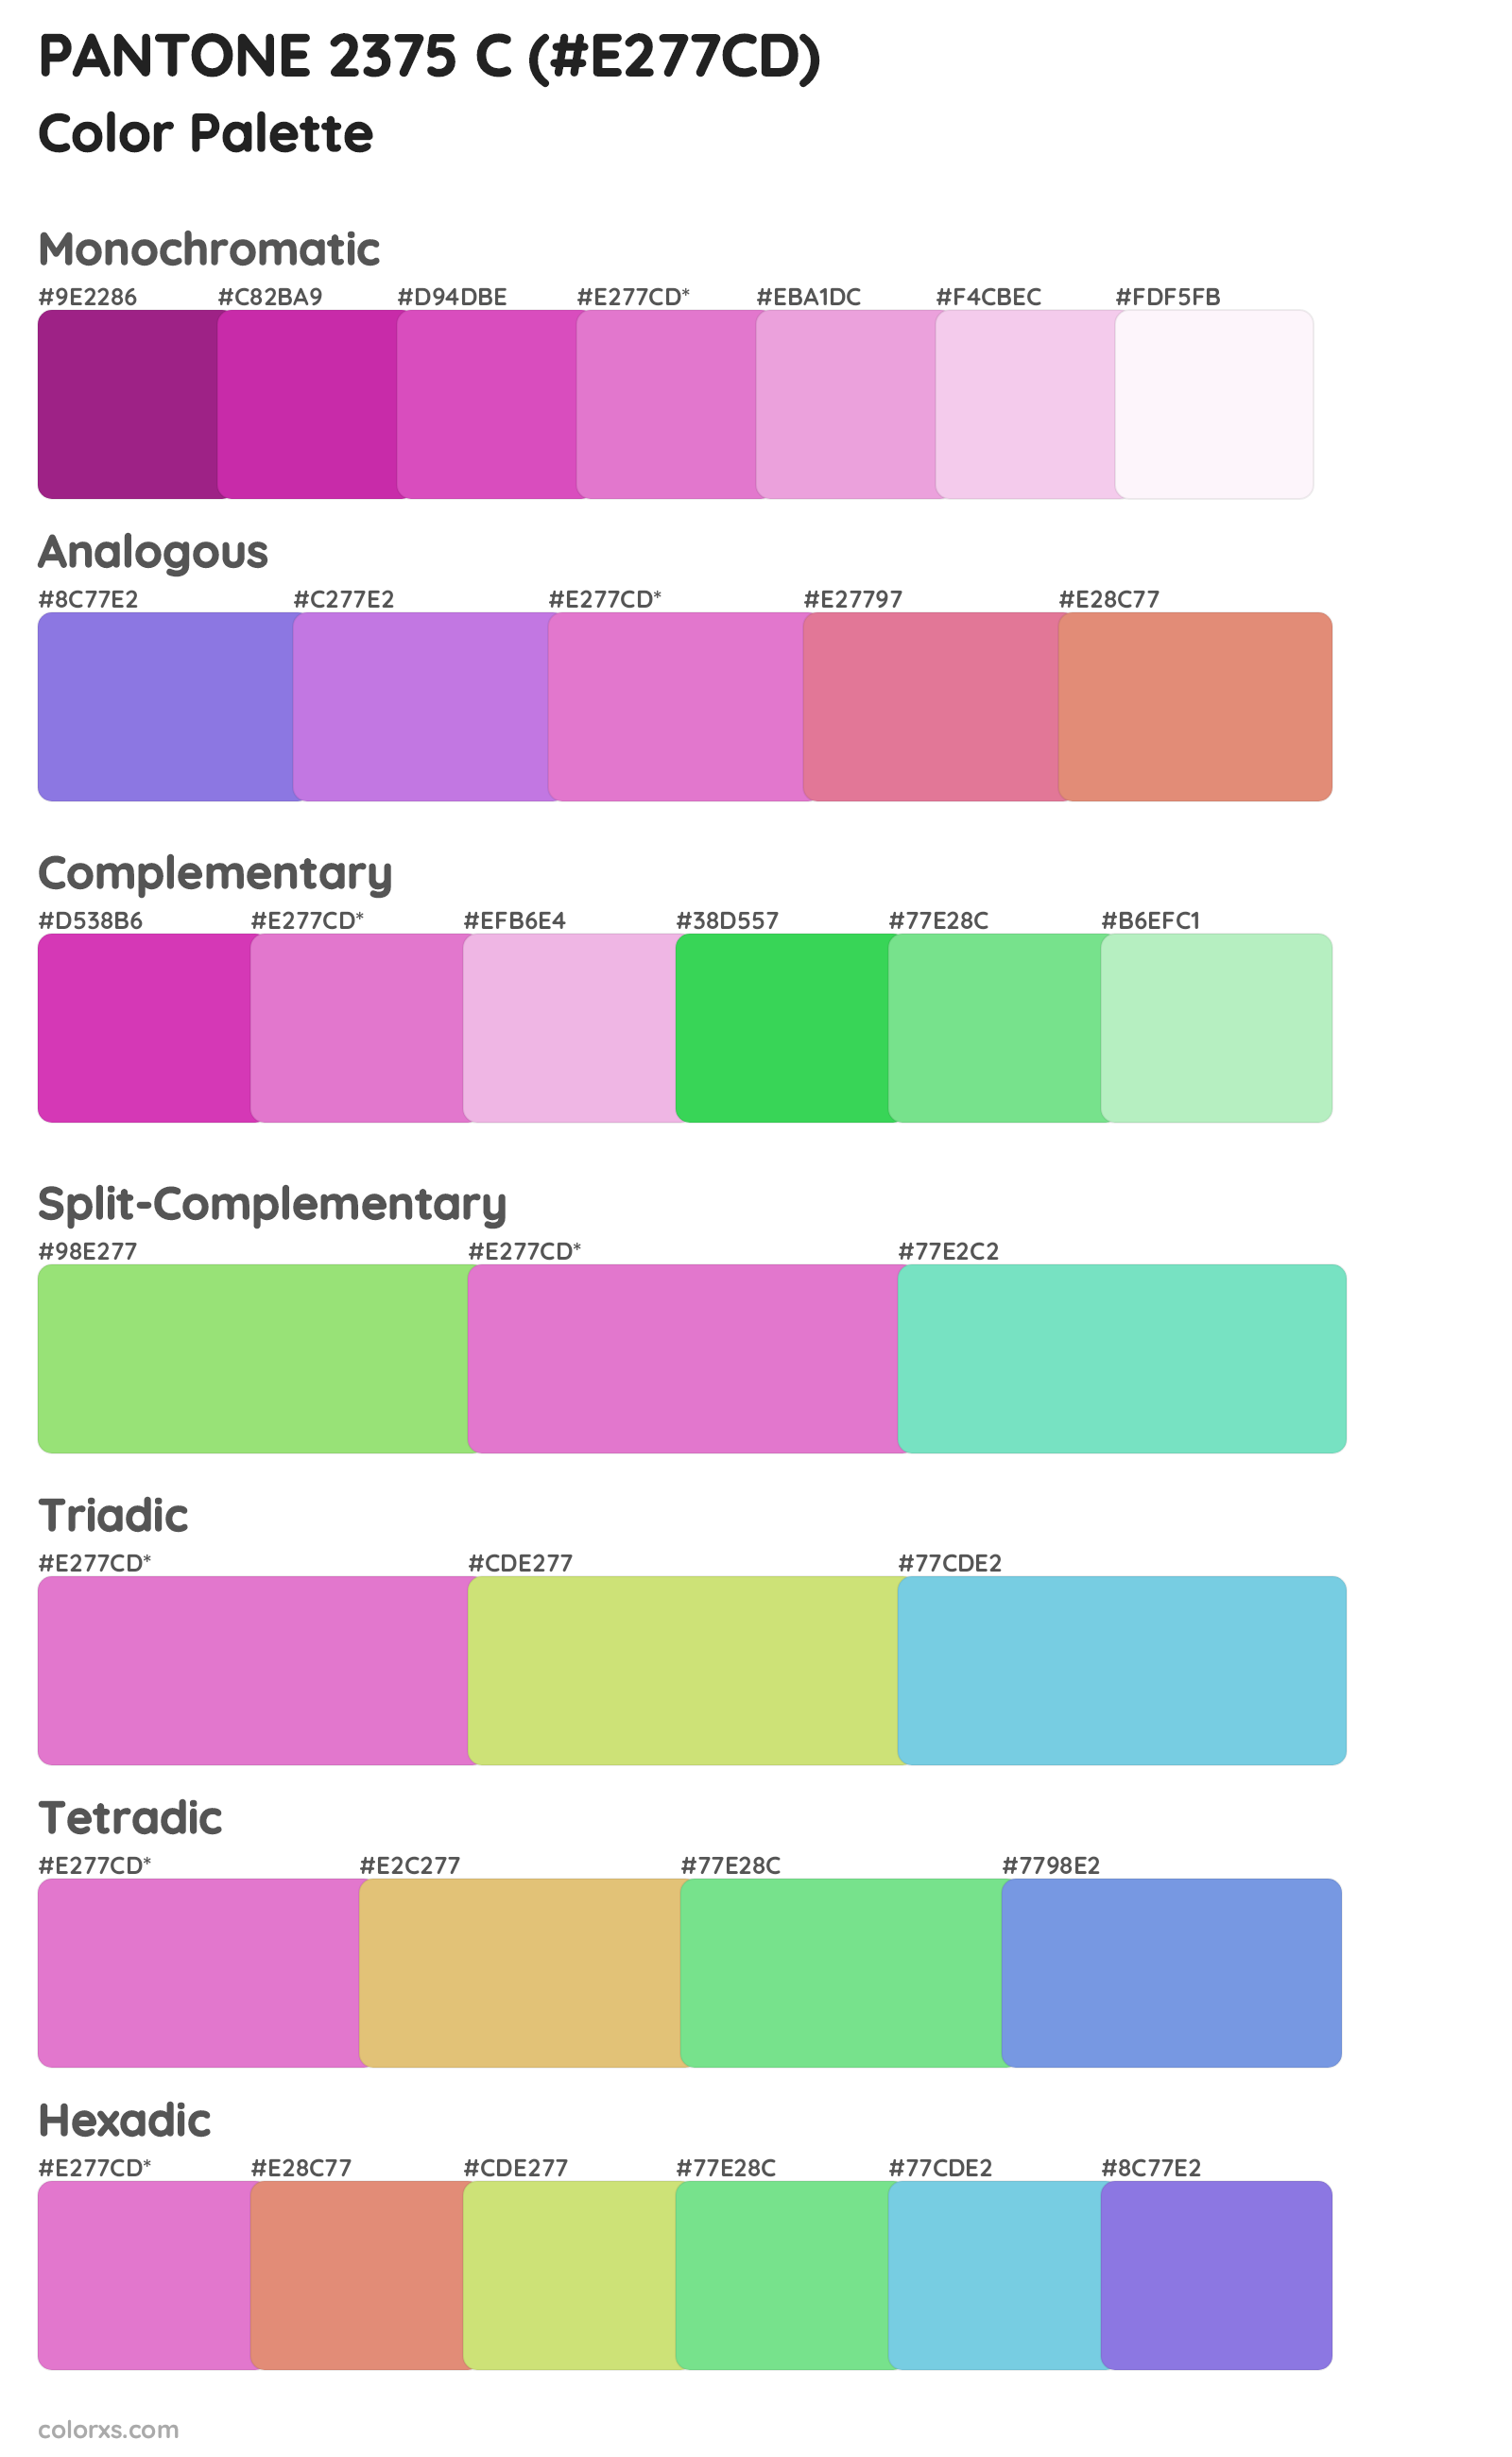 PANTONE 2375 C Color Scheme Palettes